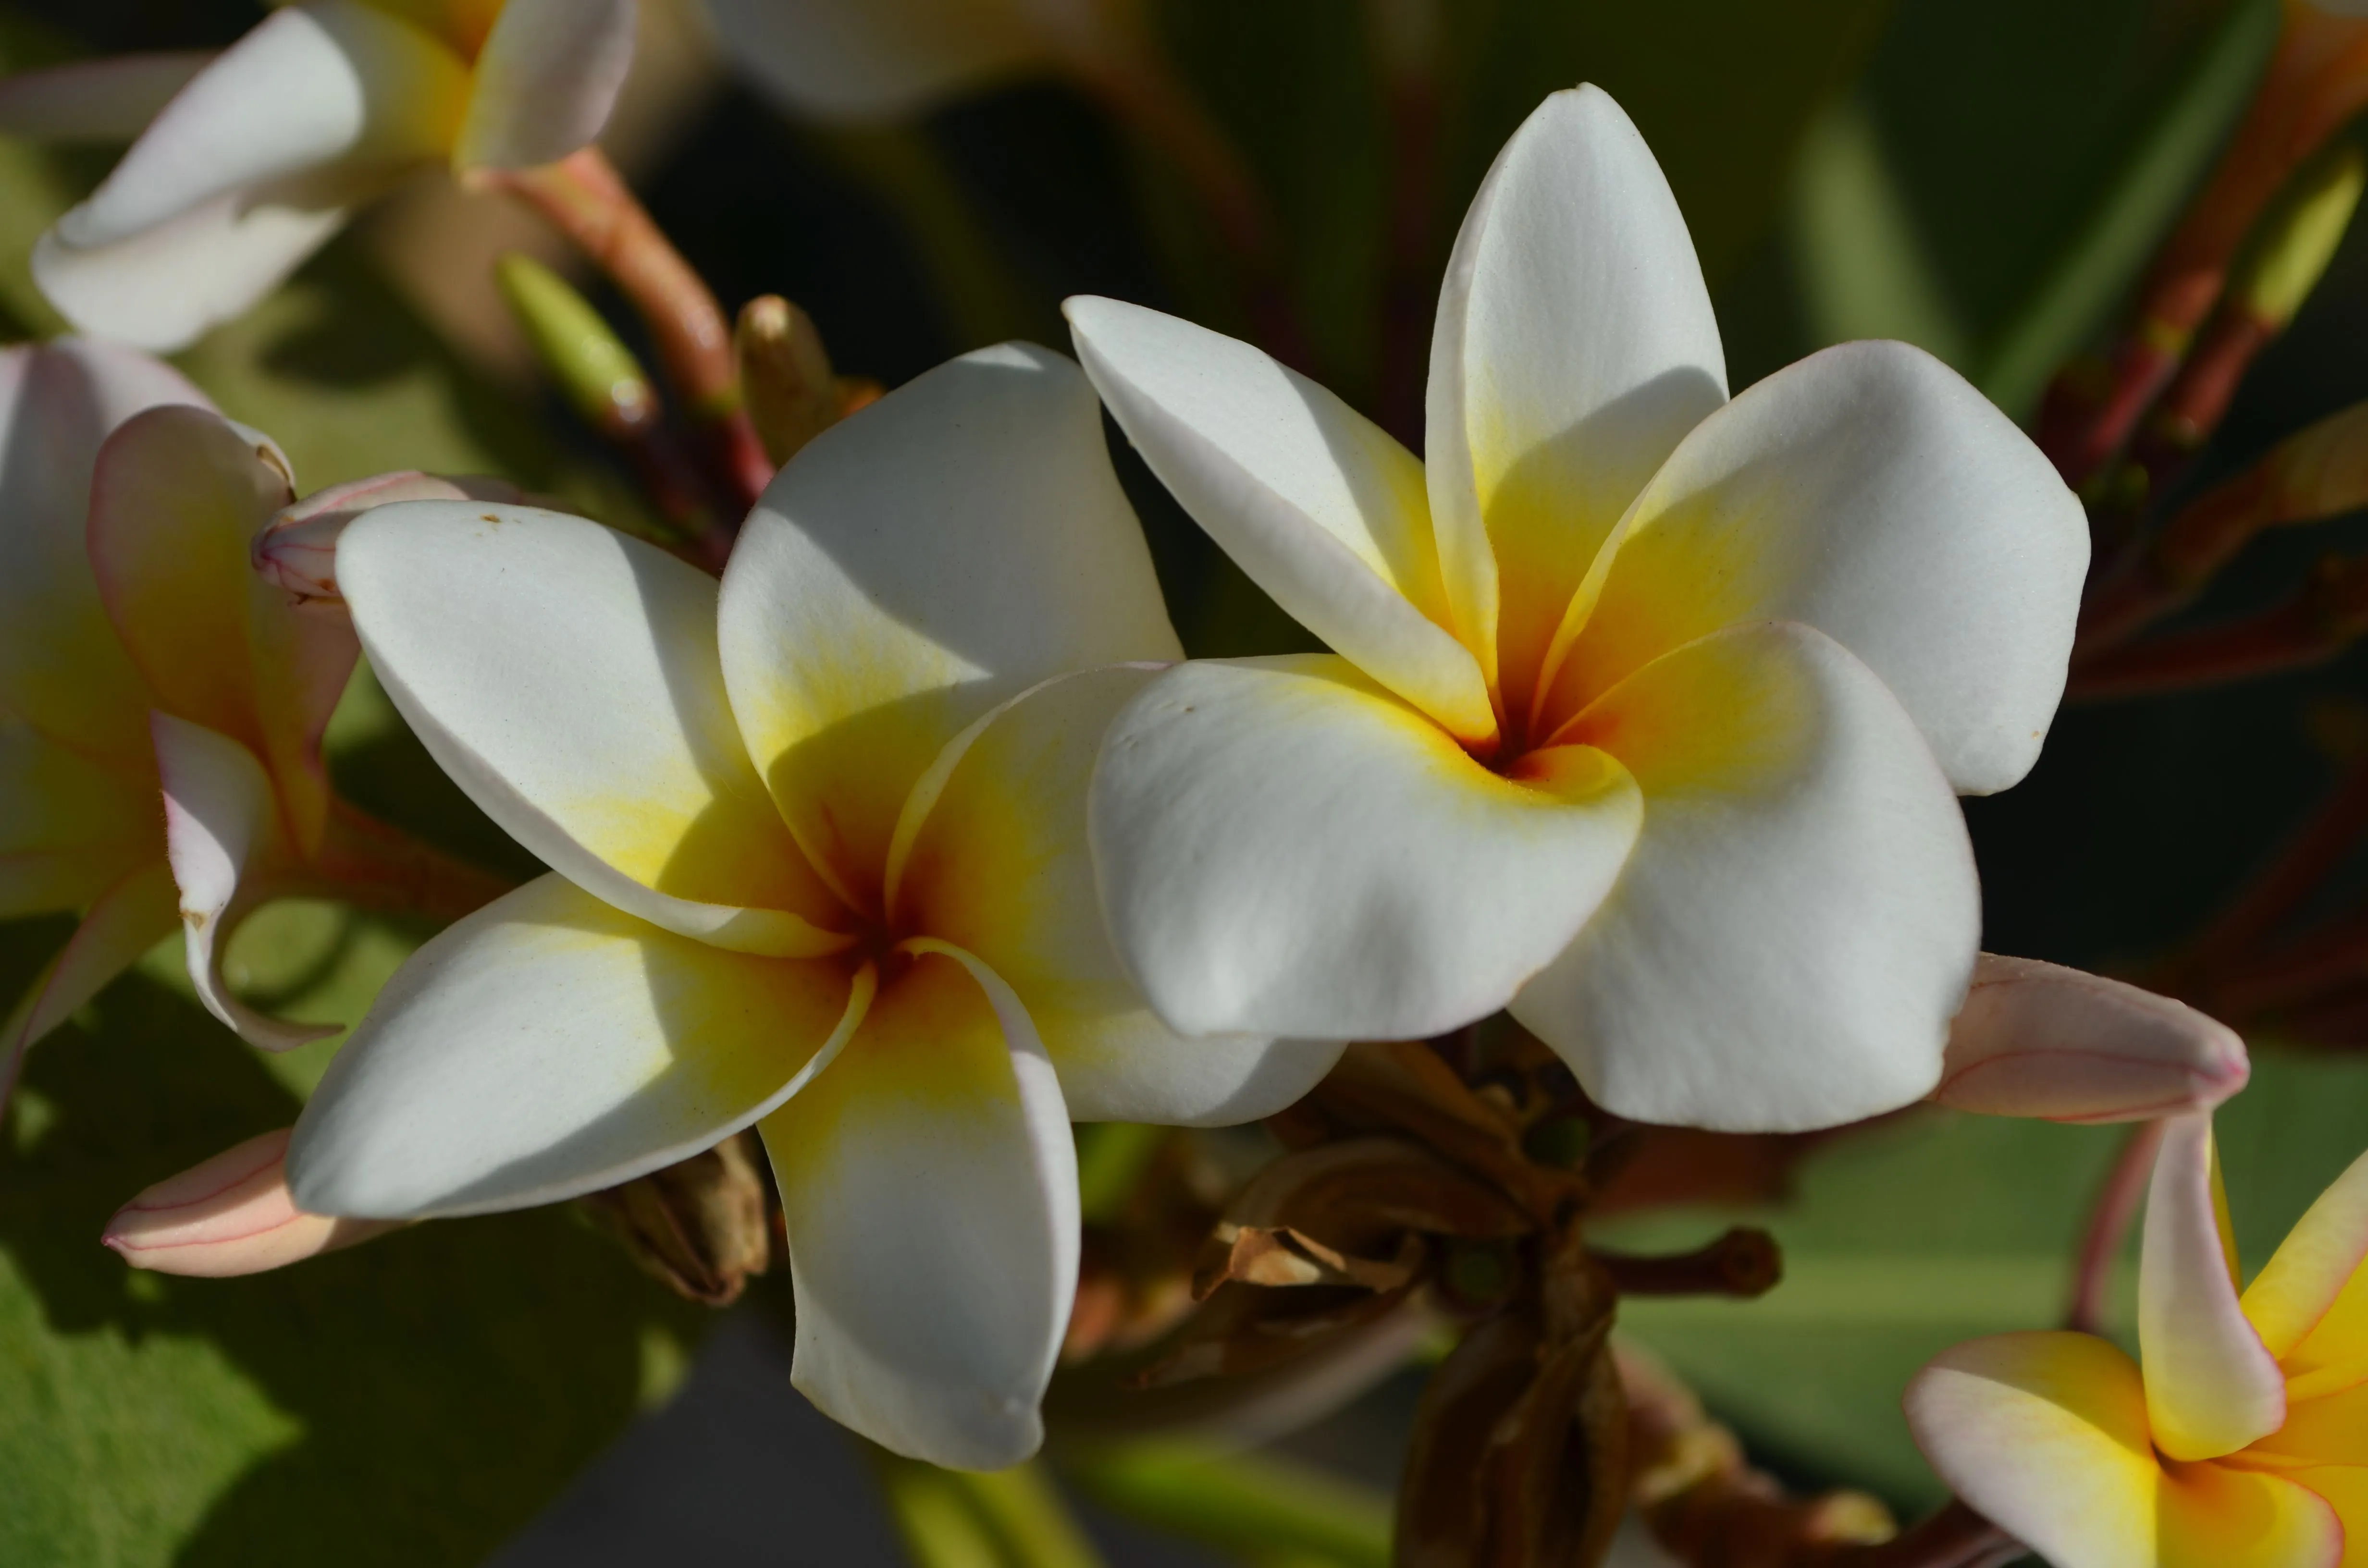 flores blancas y amarillas | MARAVILLATE